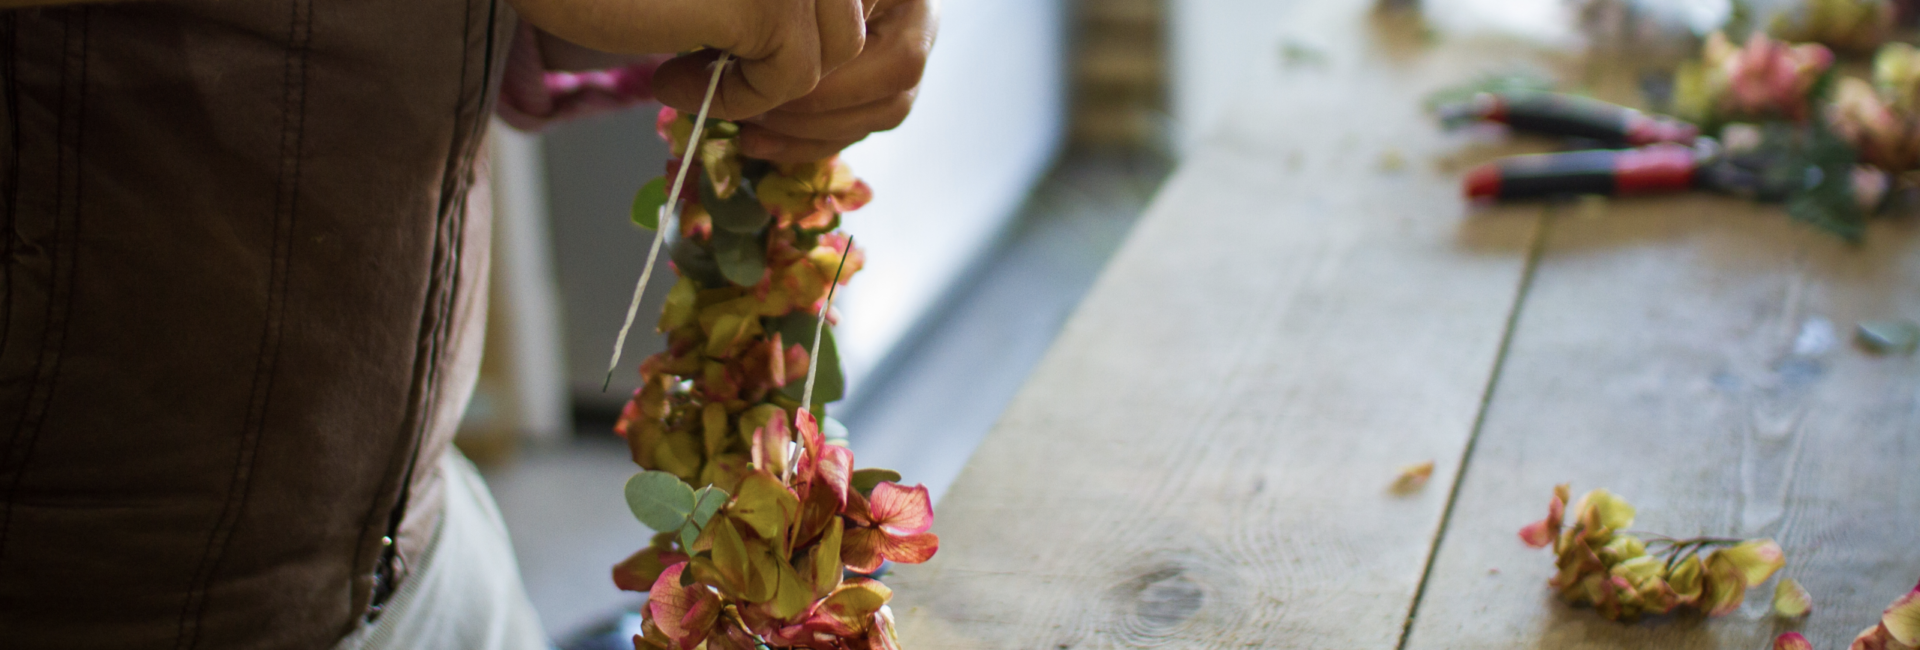 Floristería en Granada especialista en decoración de bodas y eventos - Arte floral